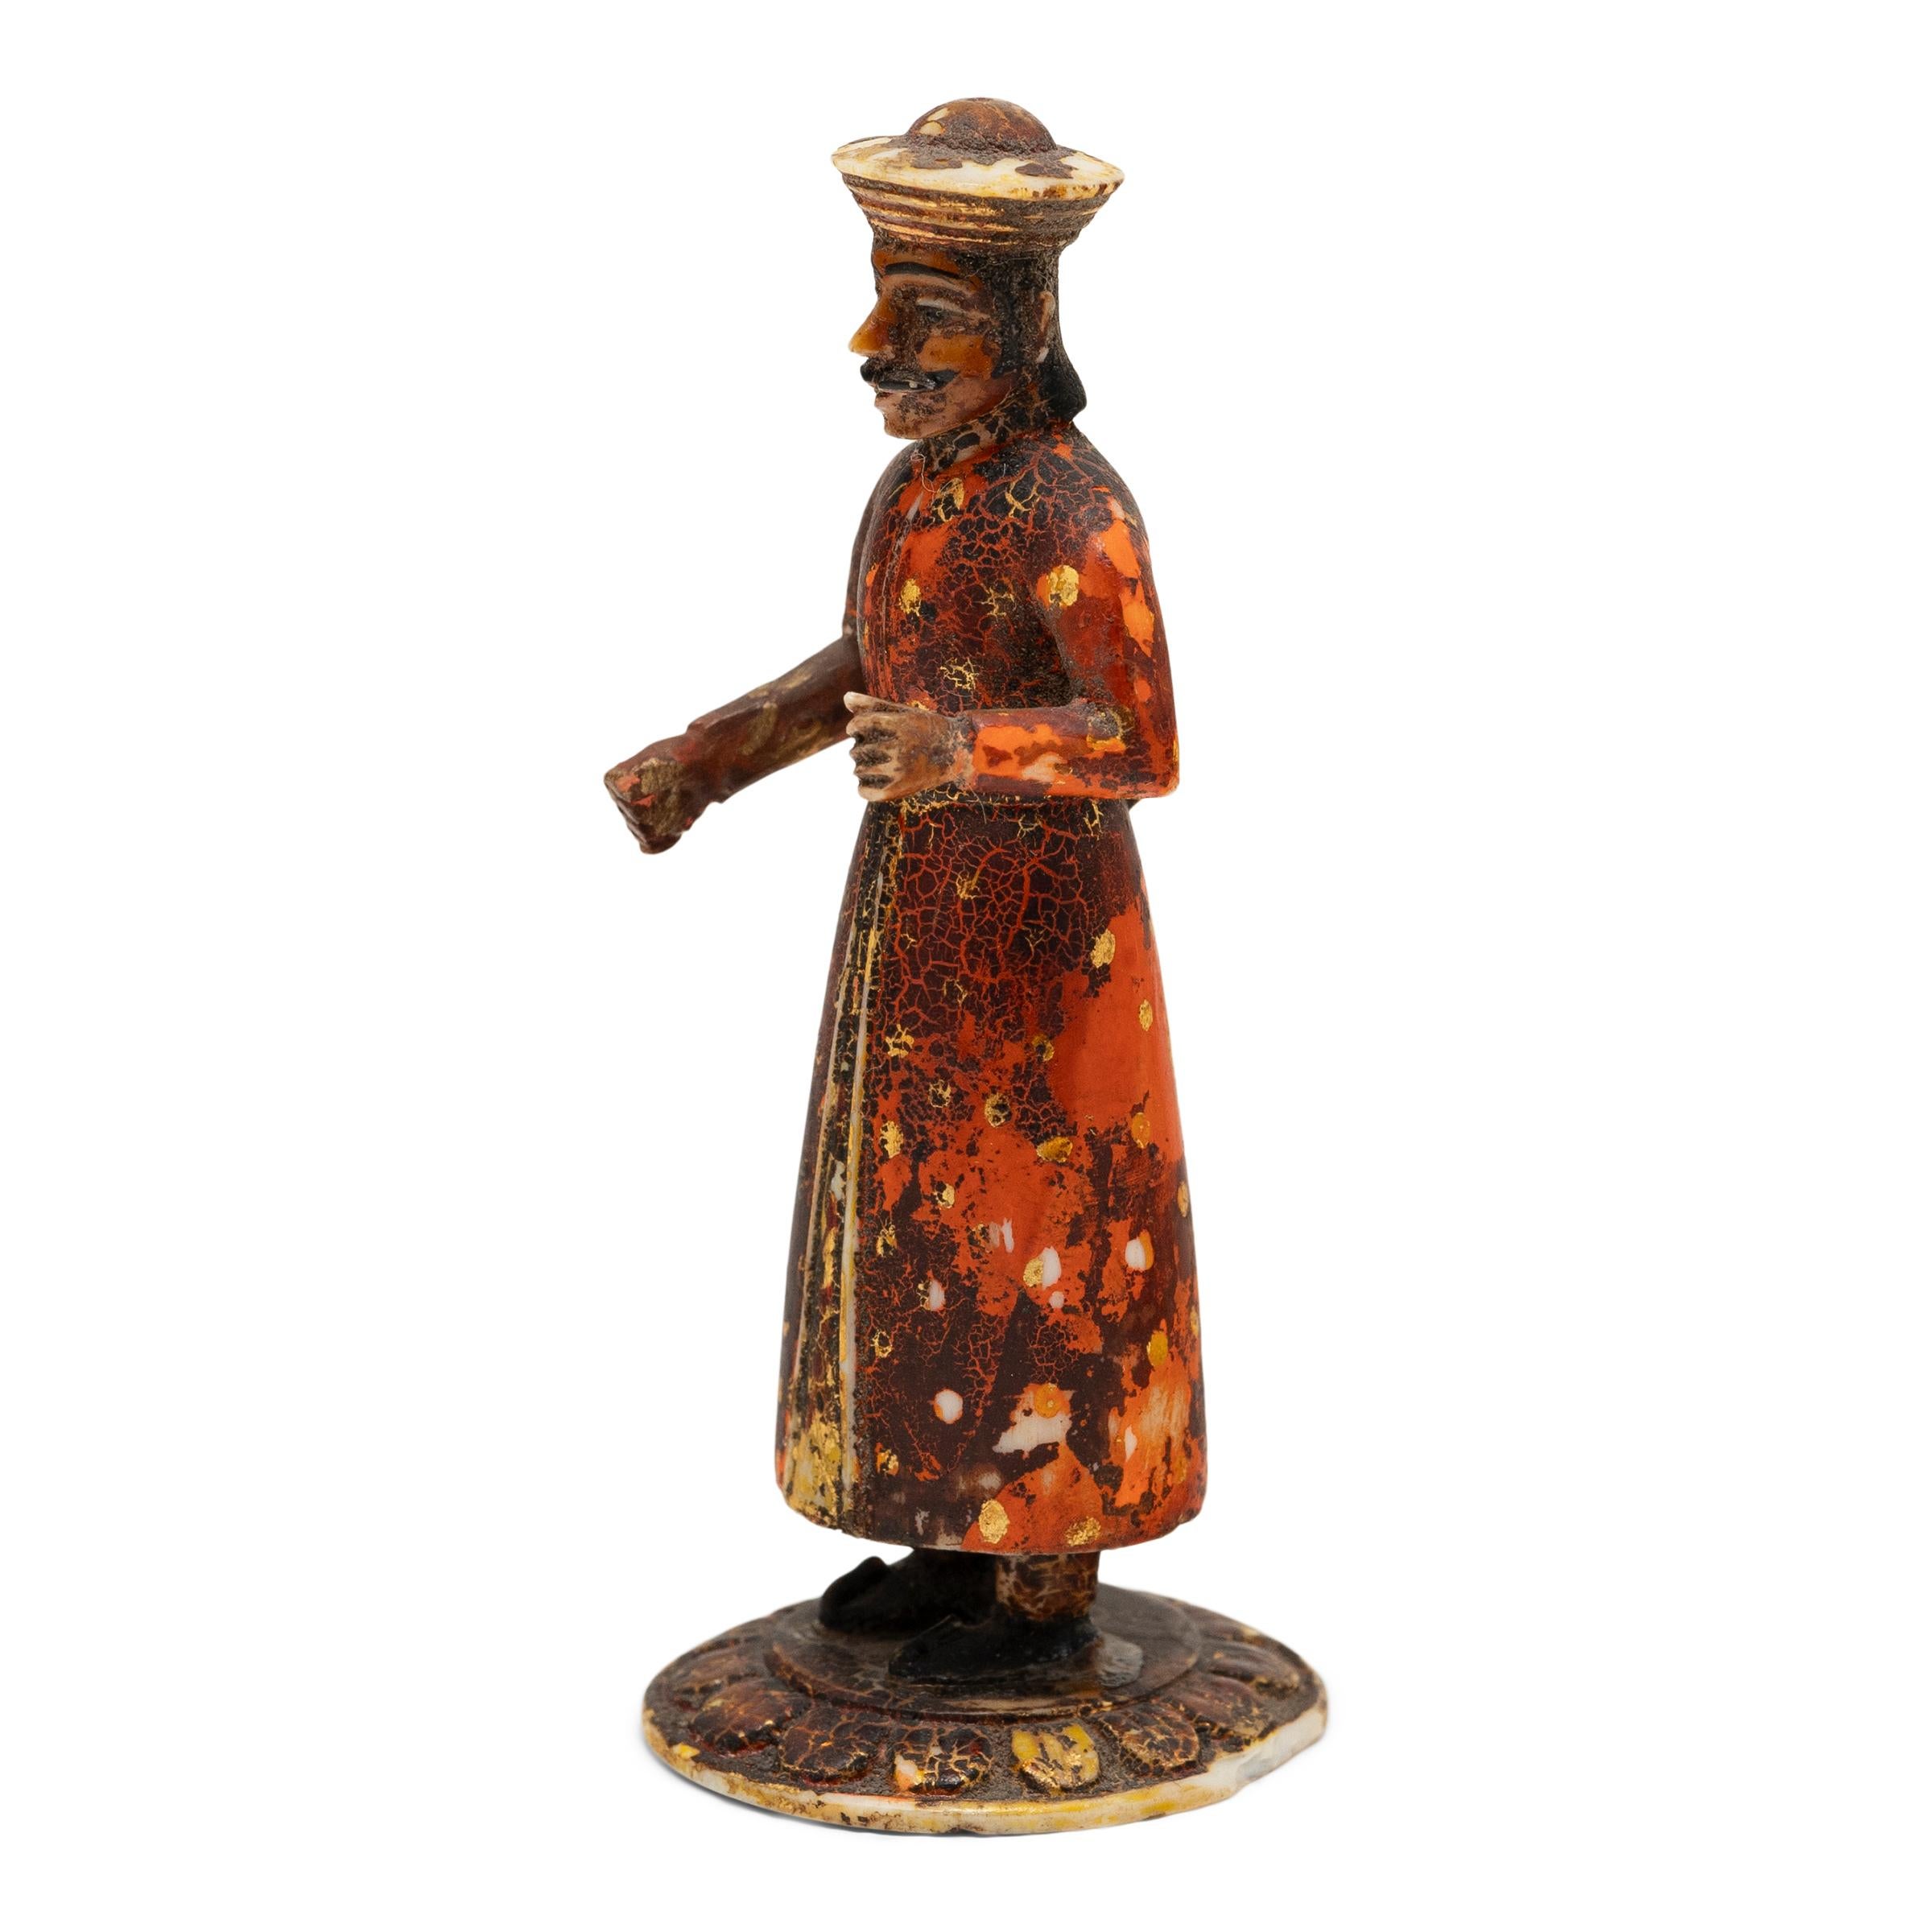 Cette figurine du début du XXe siècle est sculptée à la main dans de l'os et représente un soldat indien tenant un fusil à mousquet. Inspirée des cavaliers Sowar qui servaient sous la Compagnie britannique des Indes orientales, la petite figurine